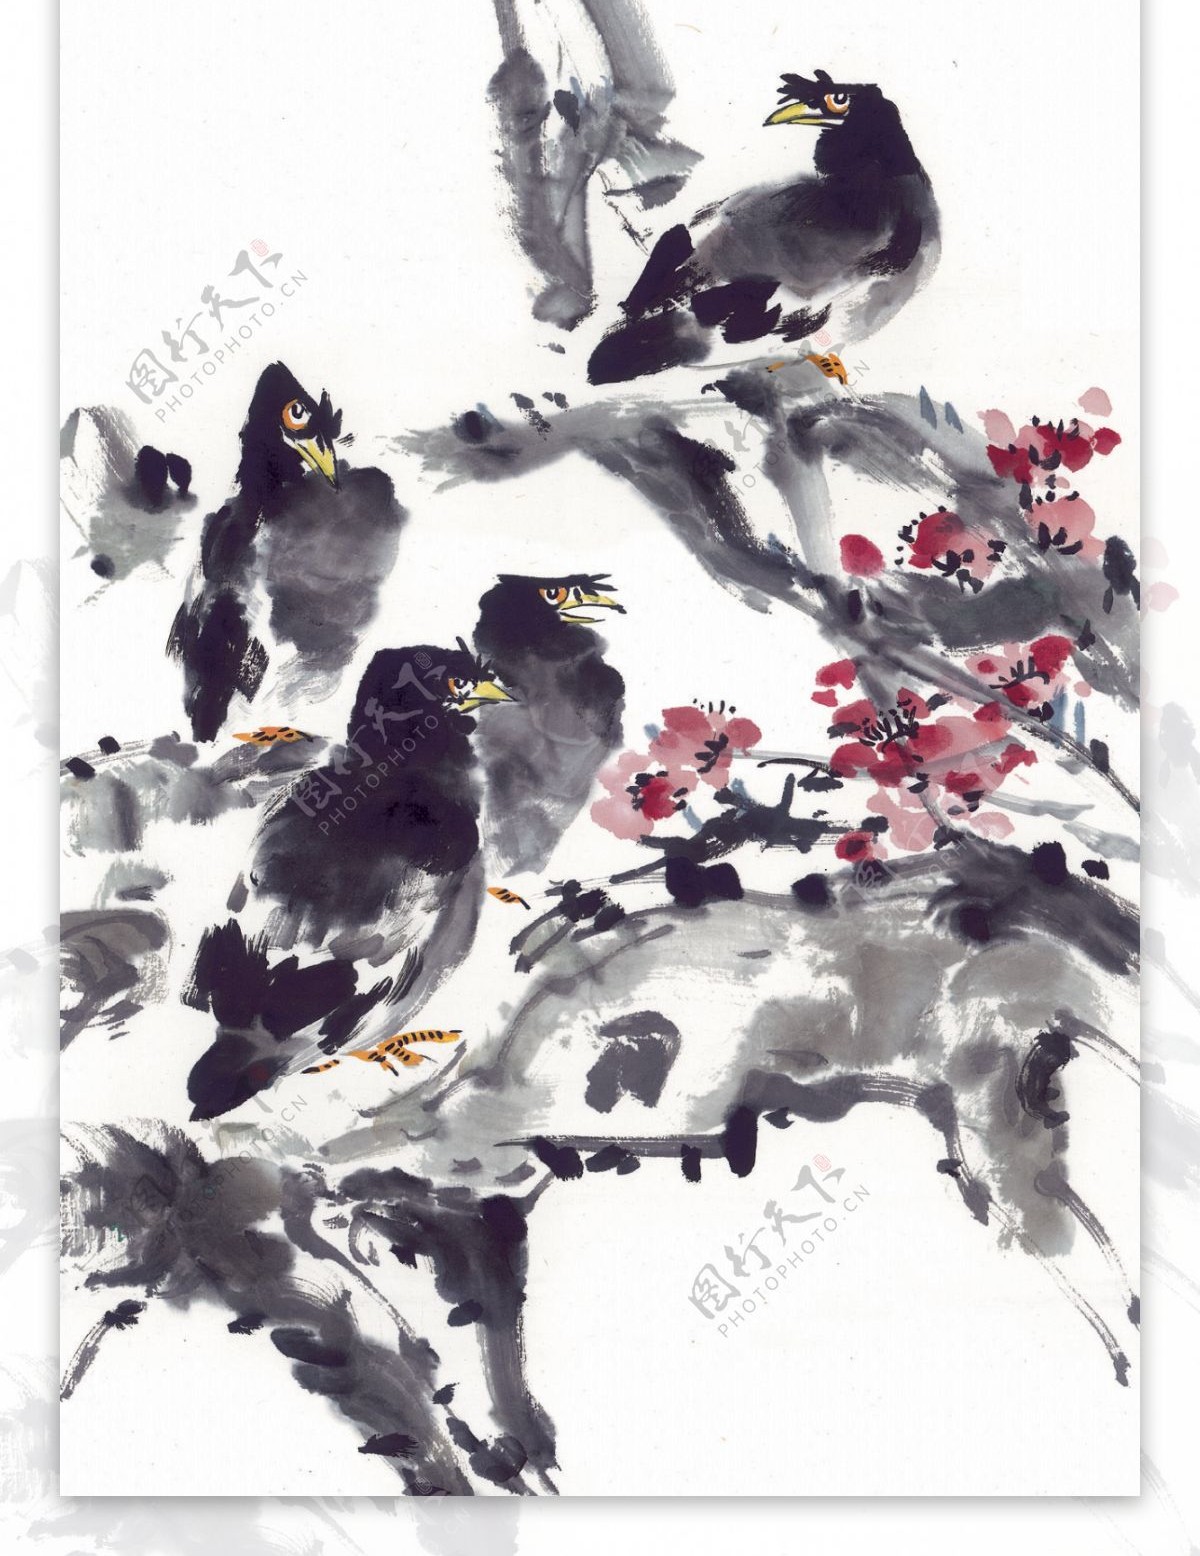 小鸟喜鹊油墨画花丛动物中华艺术绘画